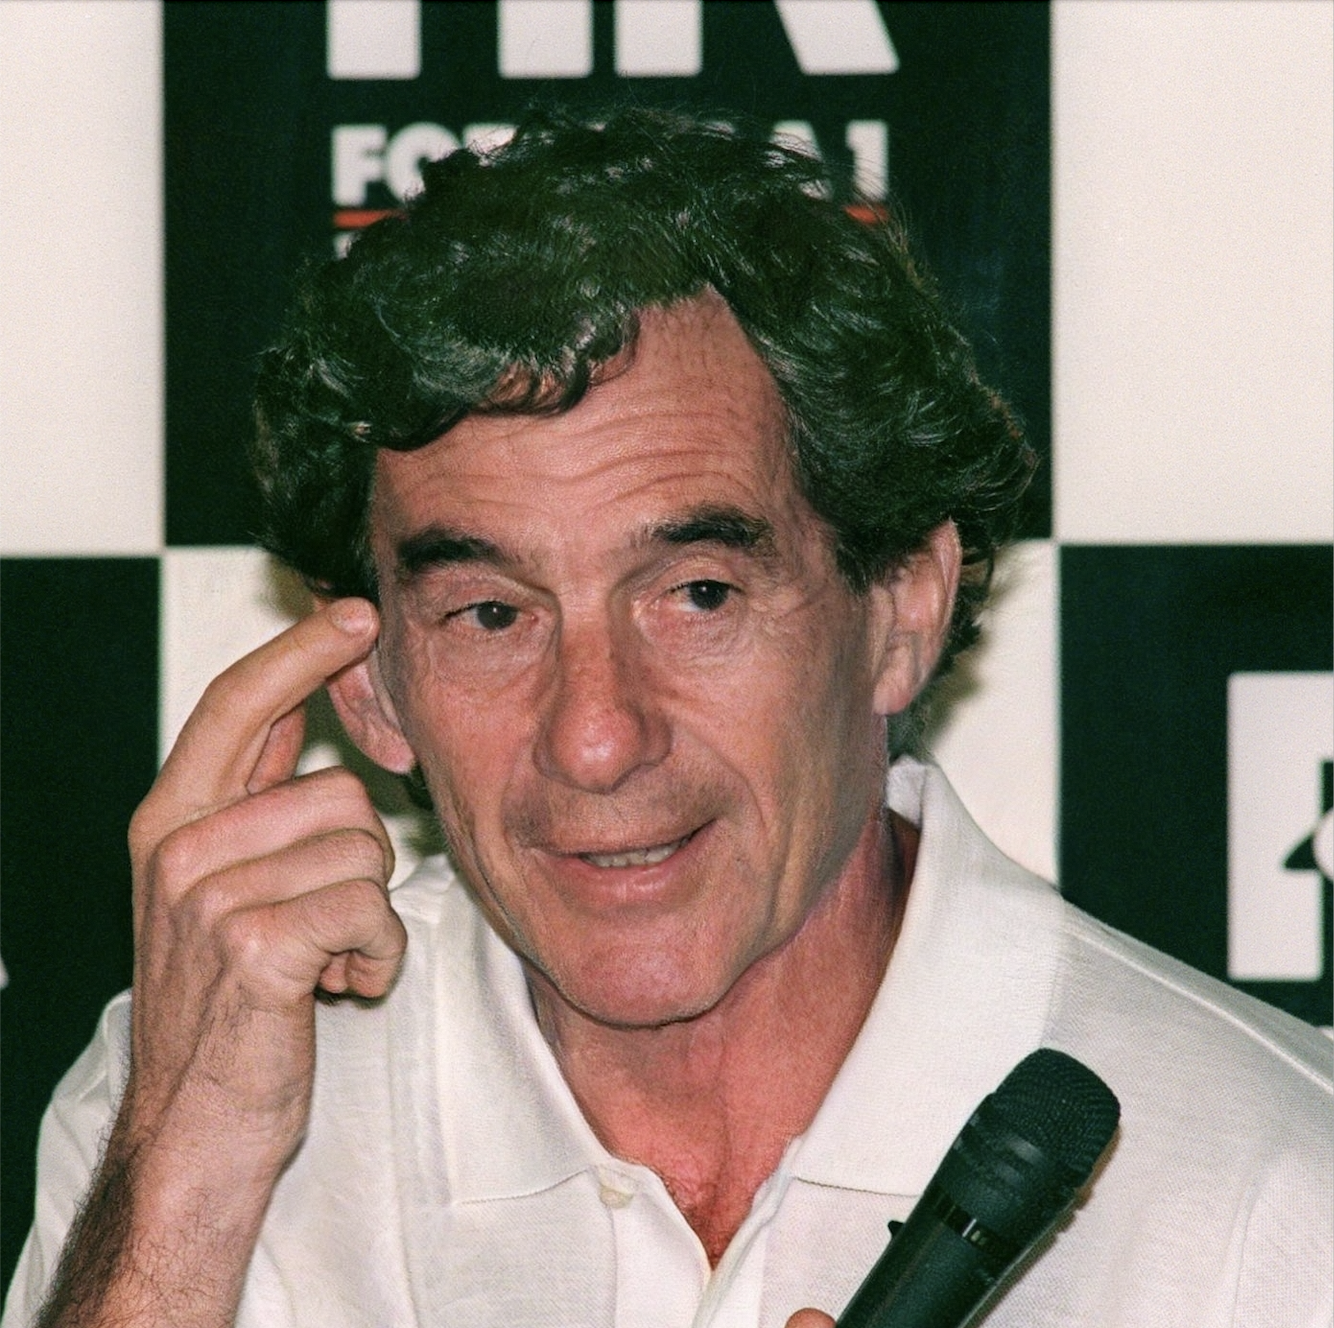 Ayrton Senna (Differently), Alternative History